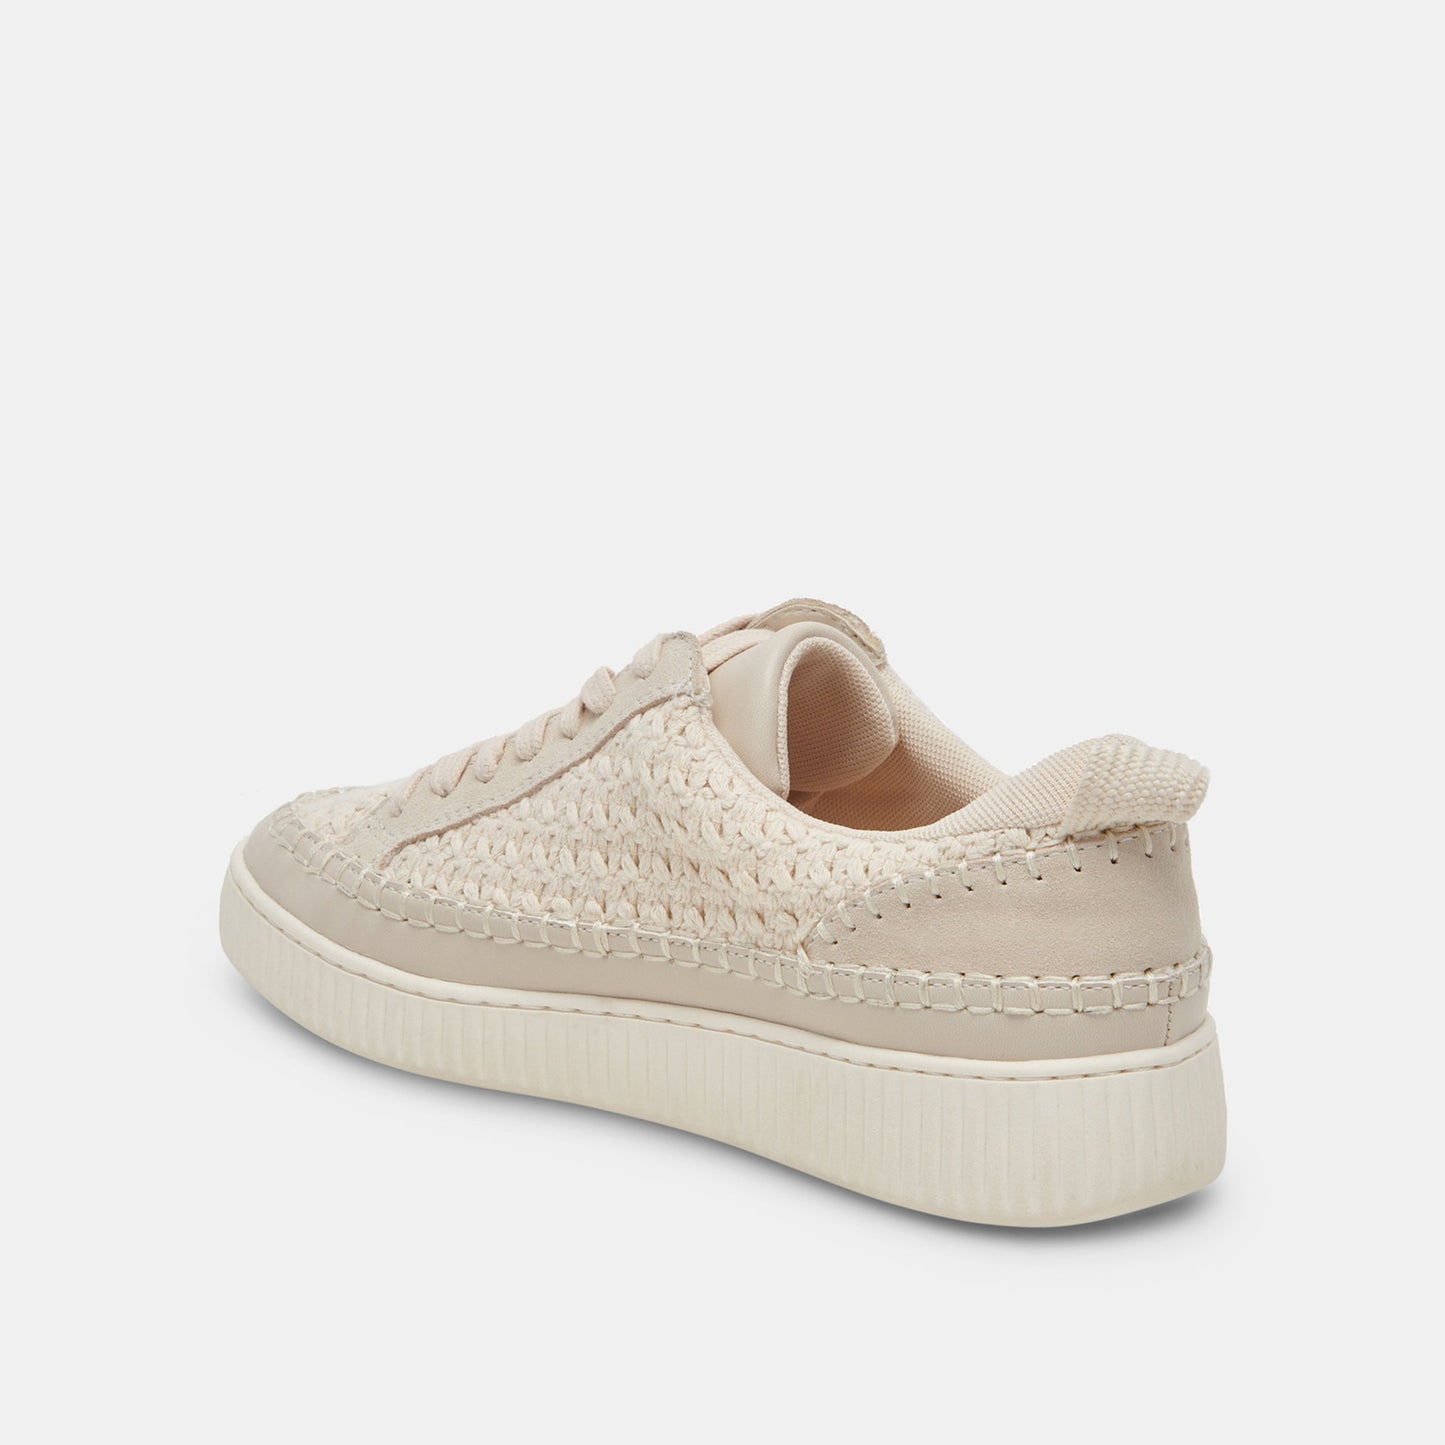 Dolce Vita “Nicona” Sneakers - Sandstone Knit